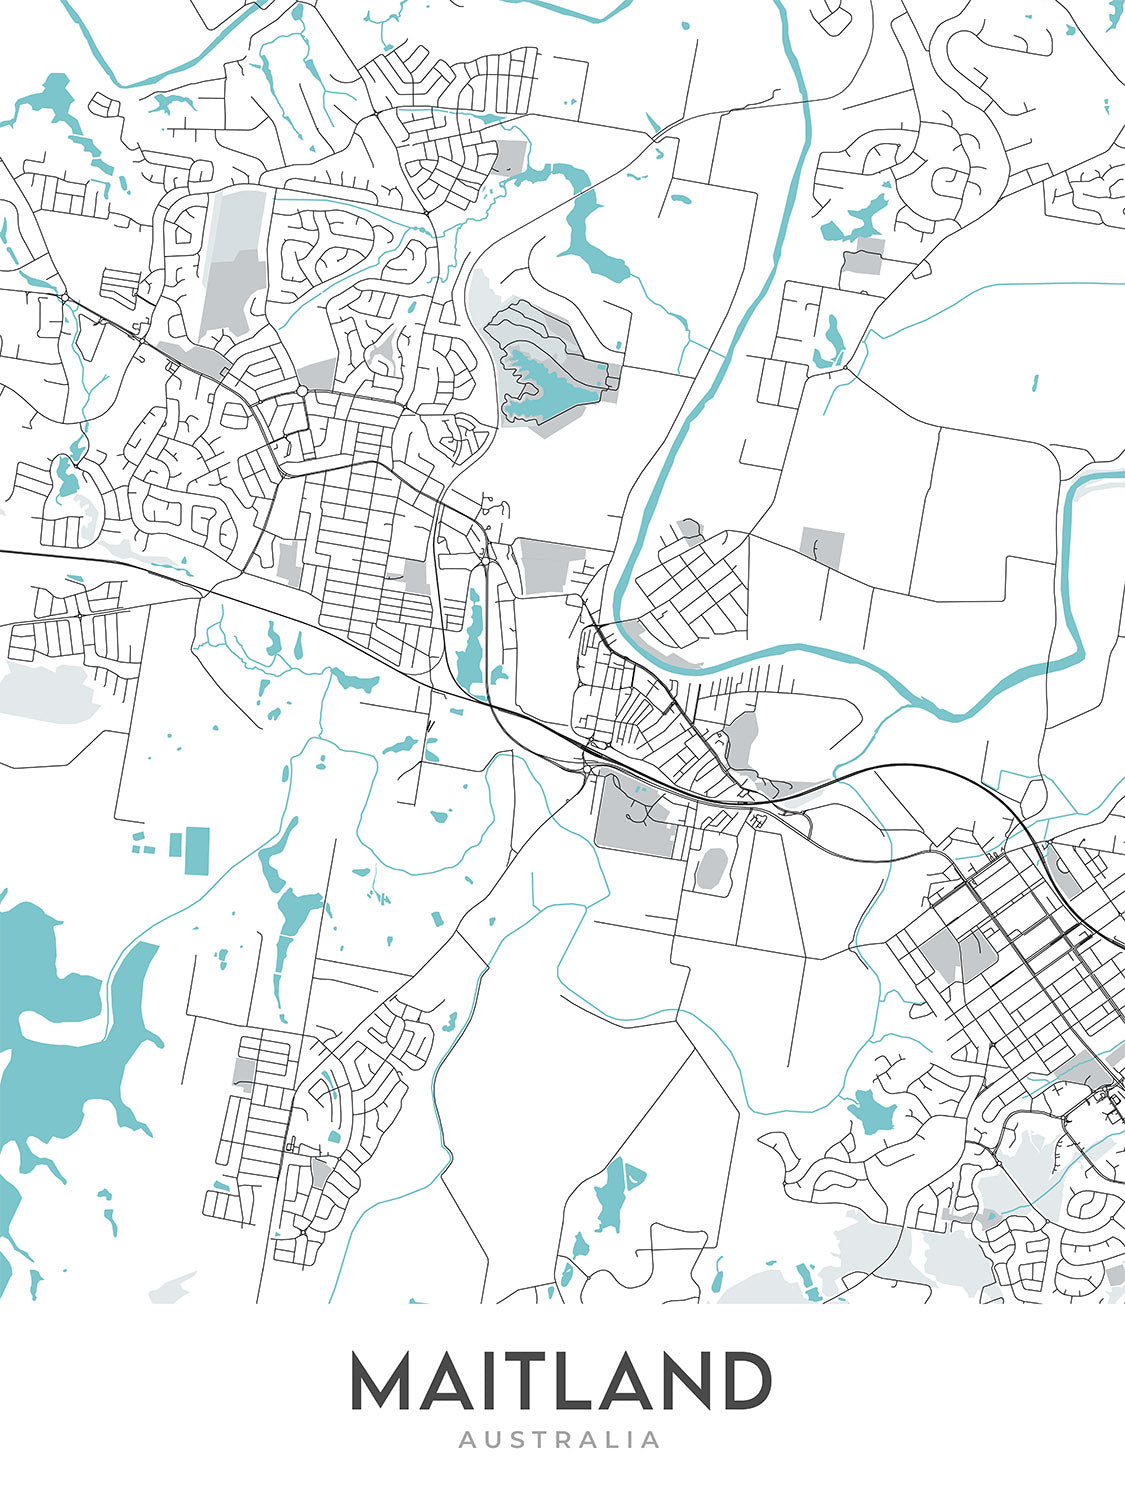 Mapa moderno de la ciudad de Maitland, Nueva Gales del Sur: Maitland Gaol, Maitland Museum, Maitland Town Hall, New England Hwy, Pacific Hwy